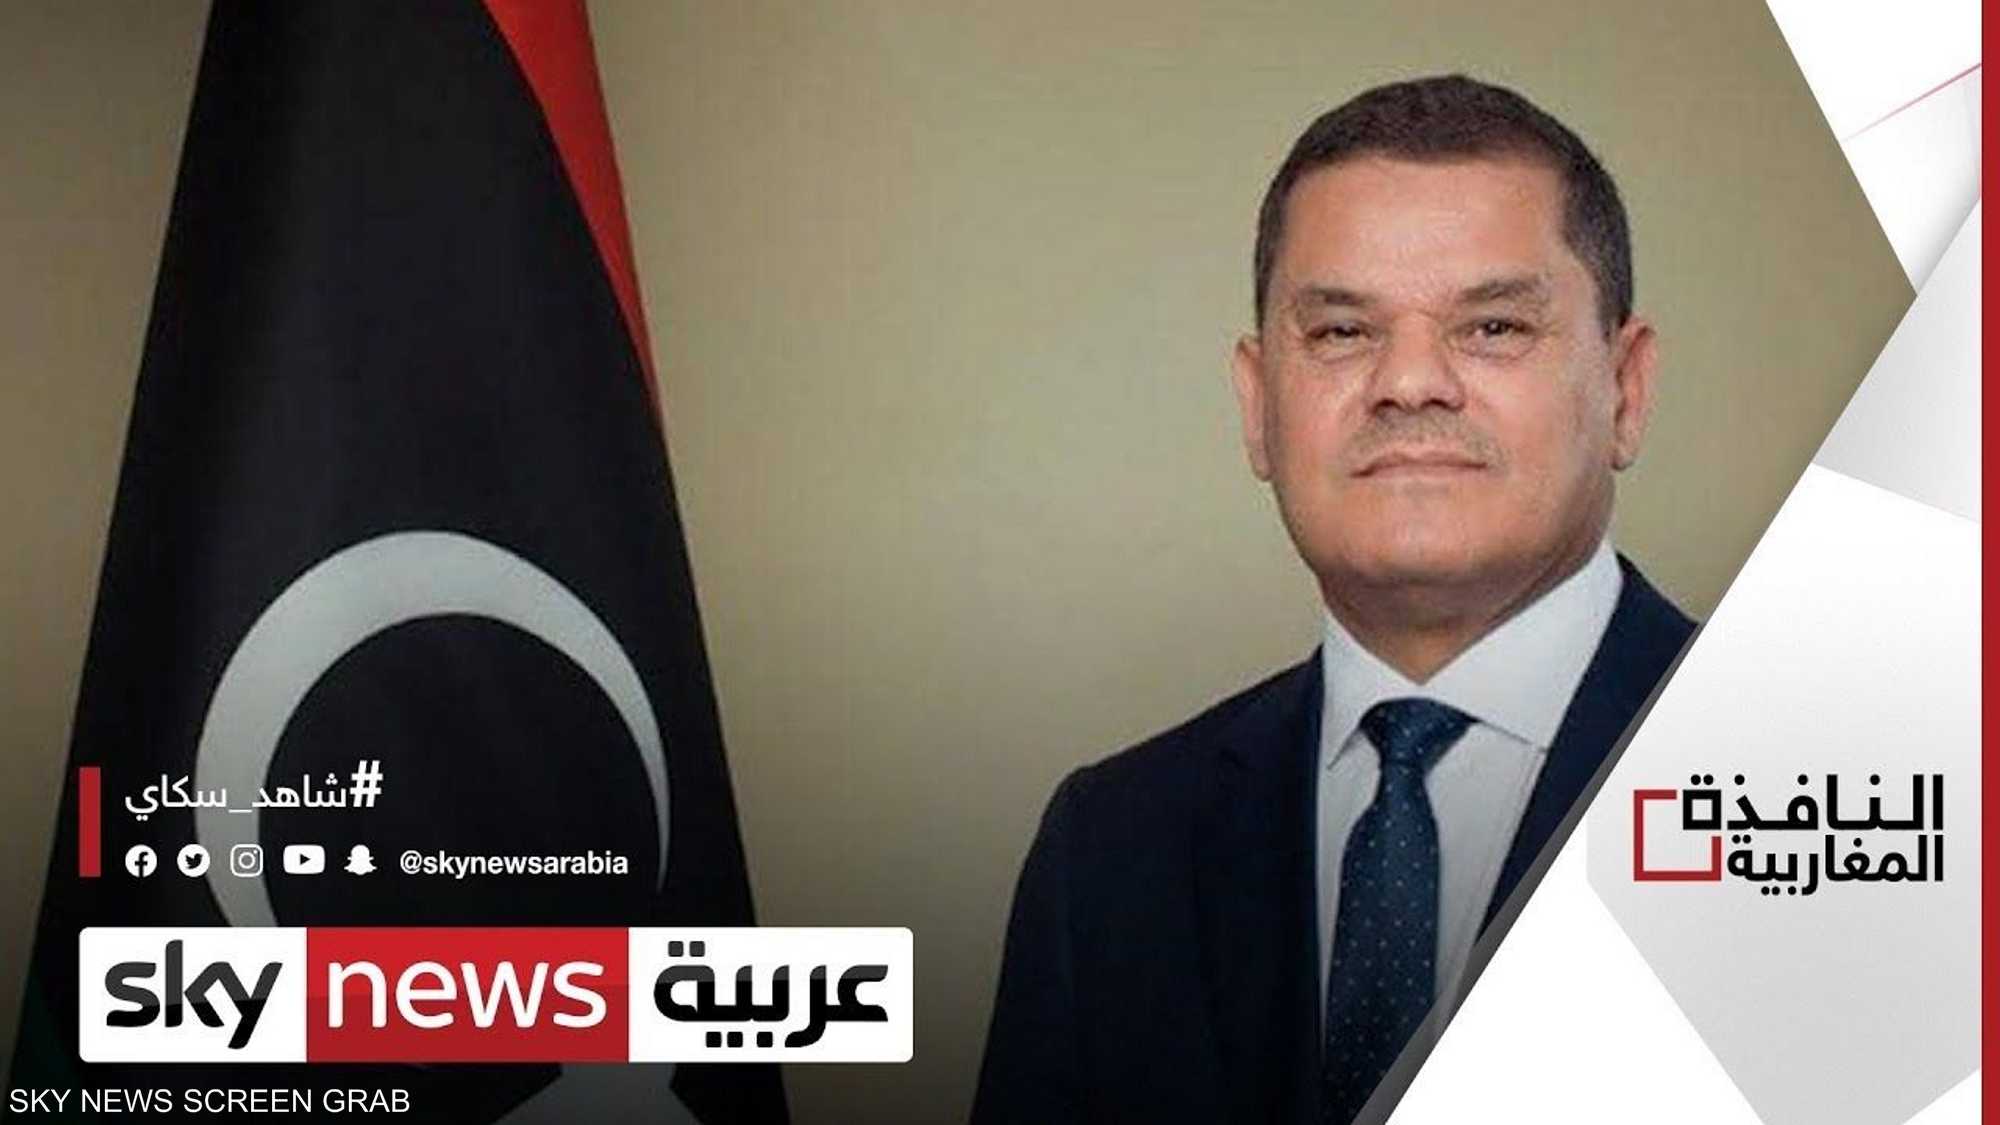 القضاء الليبي يقبل طعنا ضد ترشح الدبيبة للانتخابات